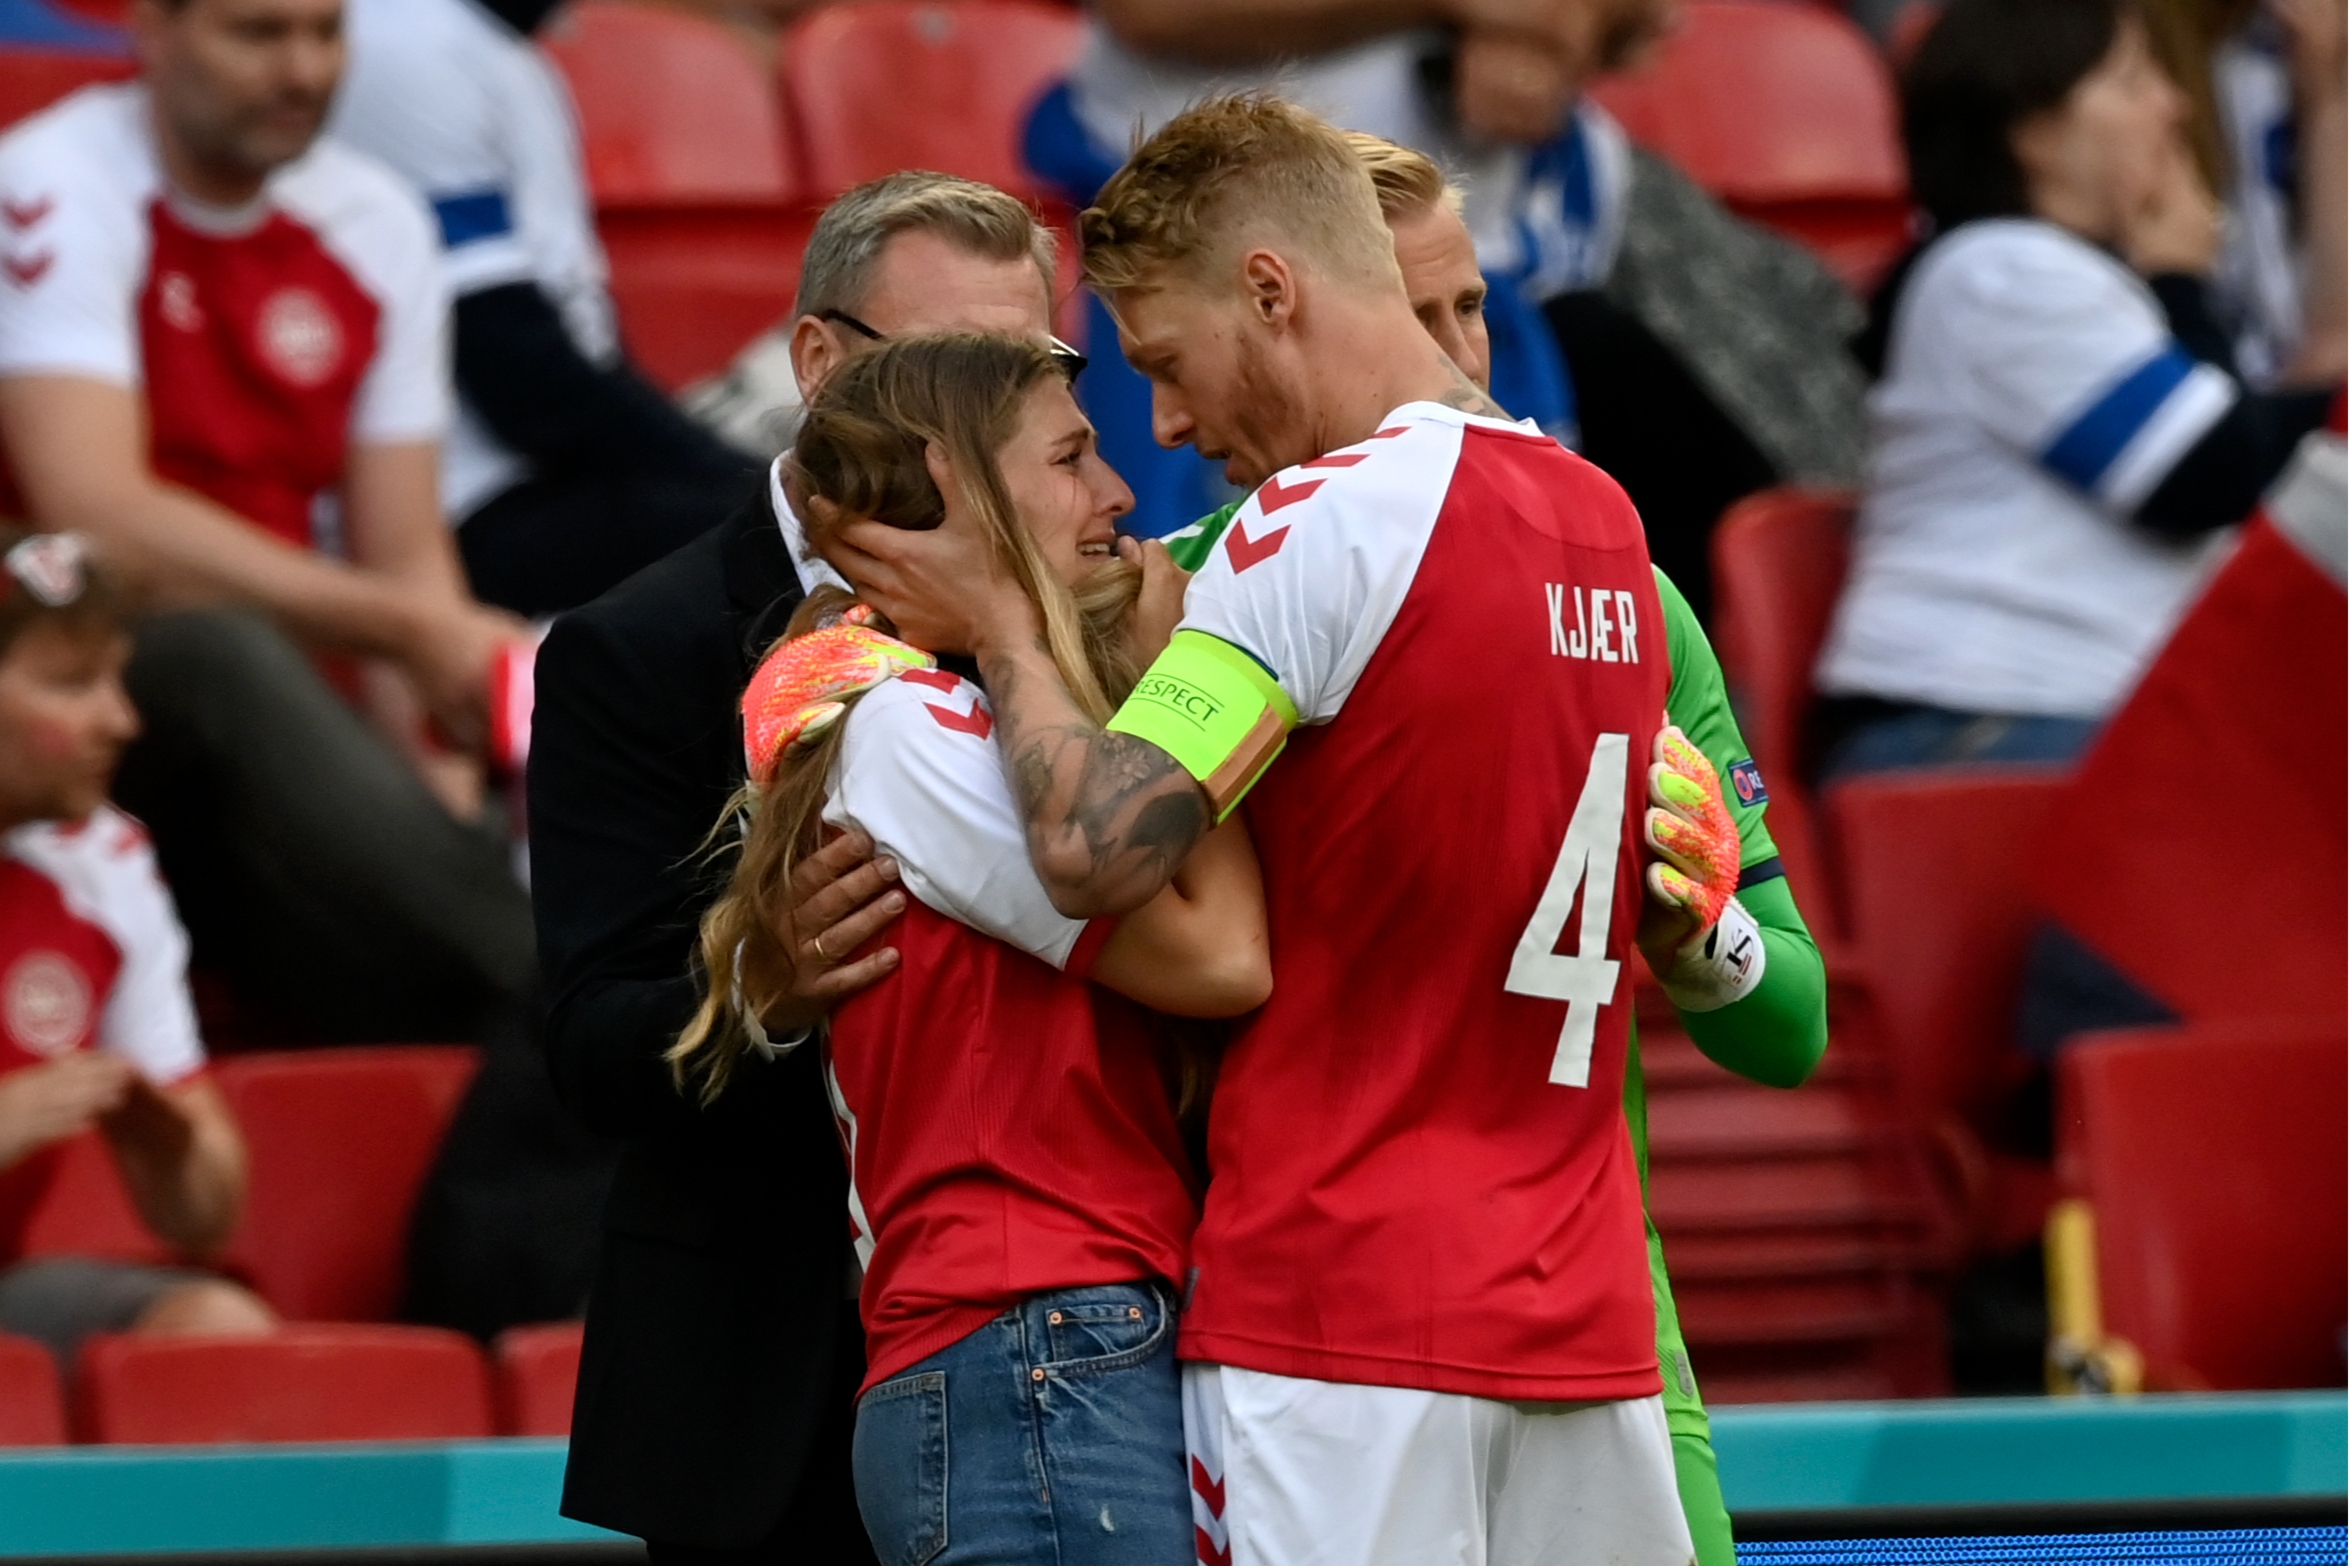 Капитан сборной Дании Симон Кьер успокаивает девушку Кристиана Эриксена Сабрину Квист Йенсен, с которой футболист воспитывает двоих детей.